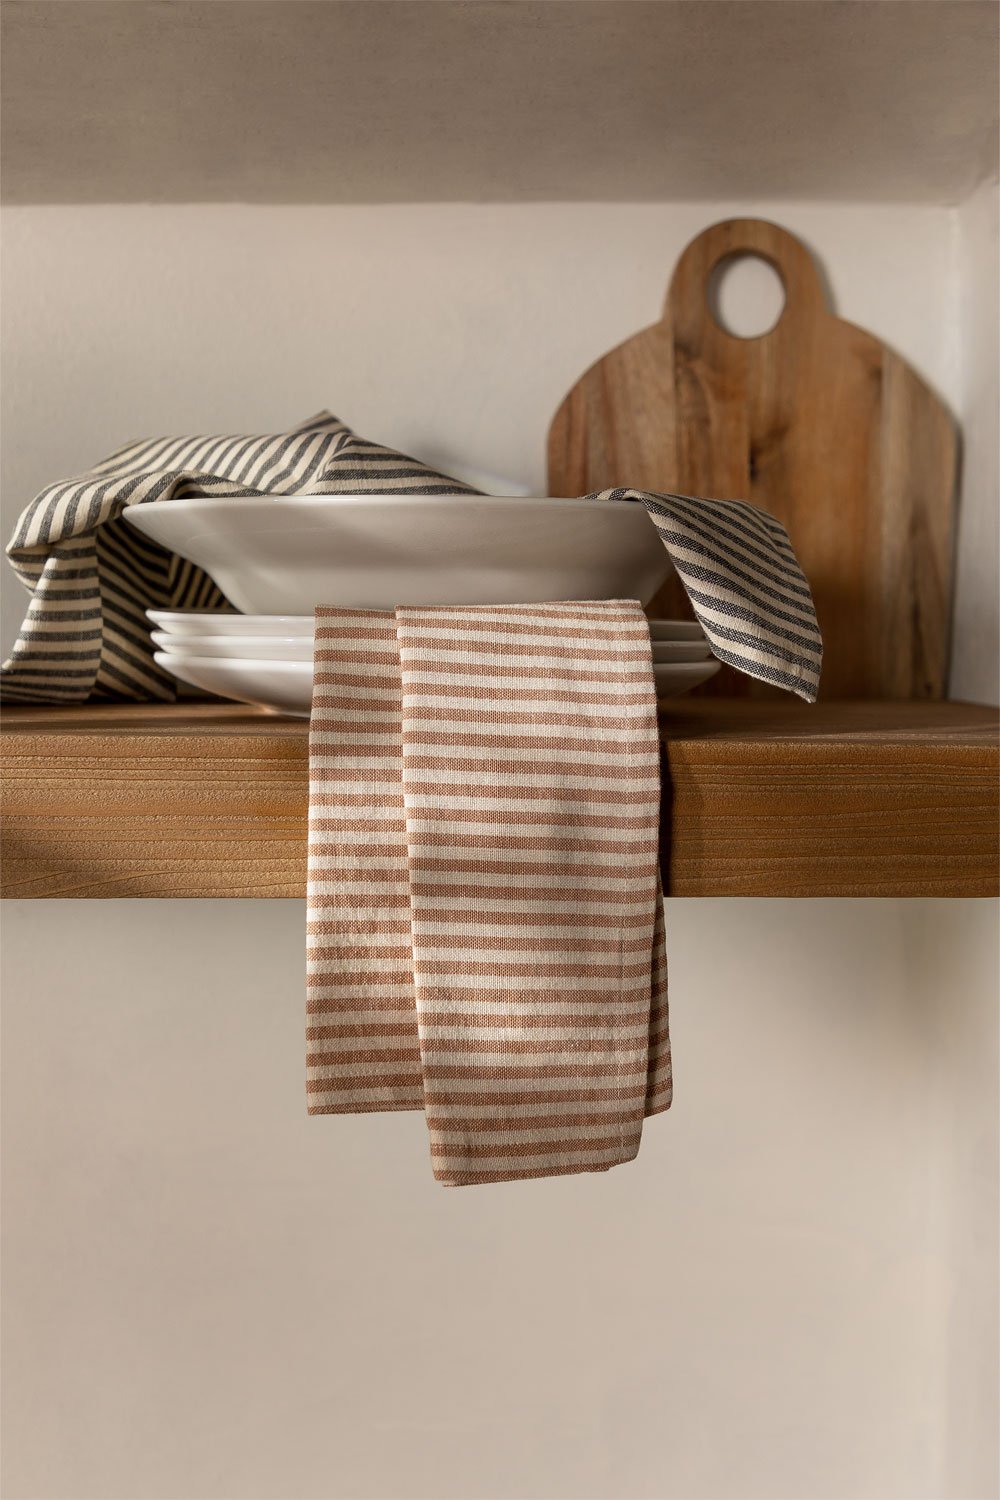 Zestaw 2 ręczników kuchennych z bawełny Nelies, obrazek w galerii 1